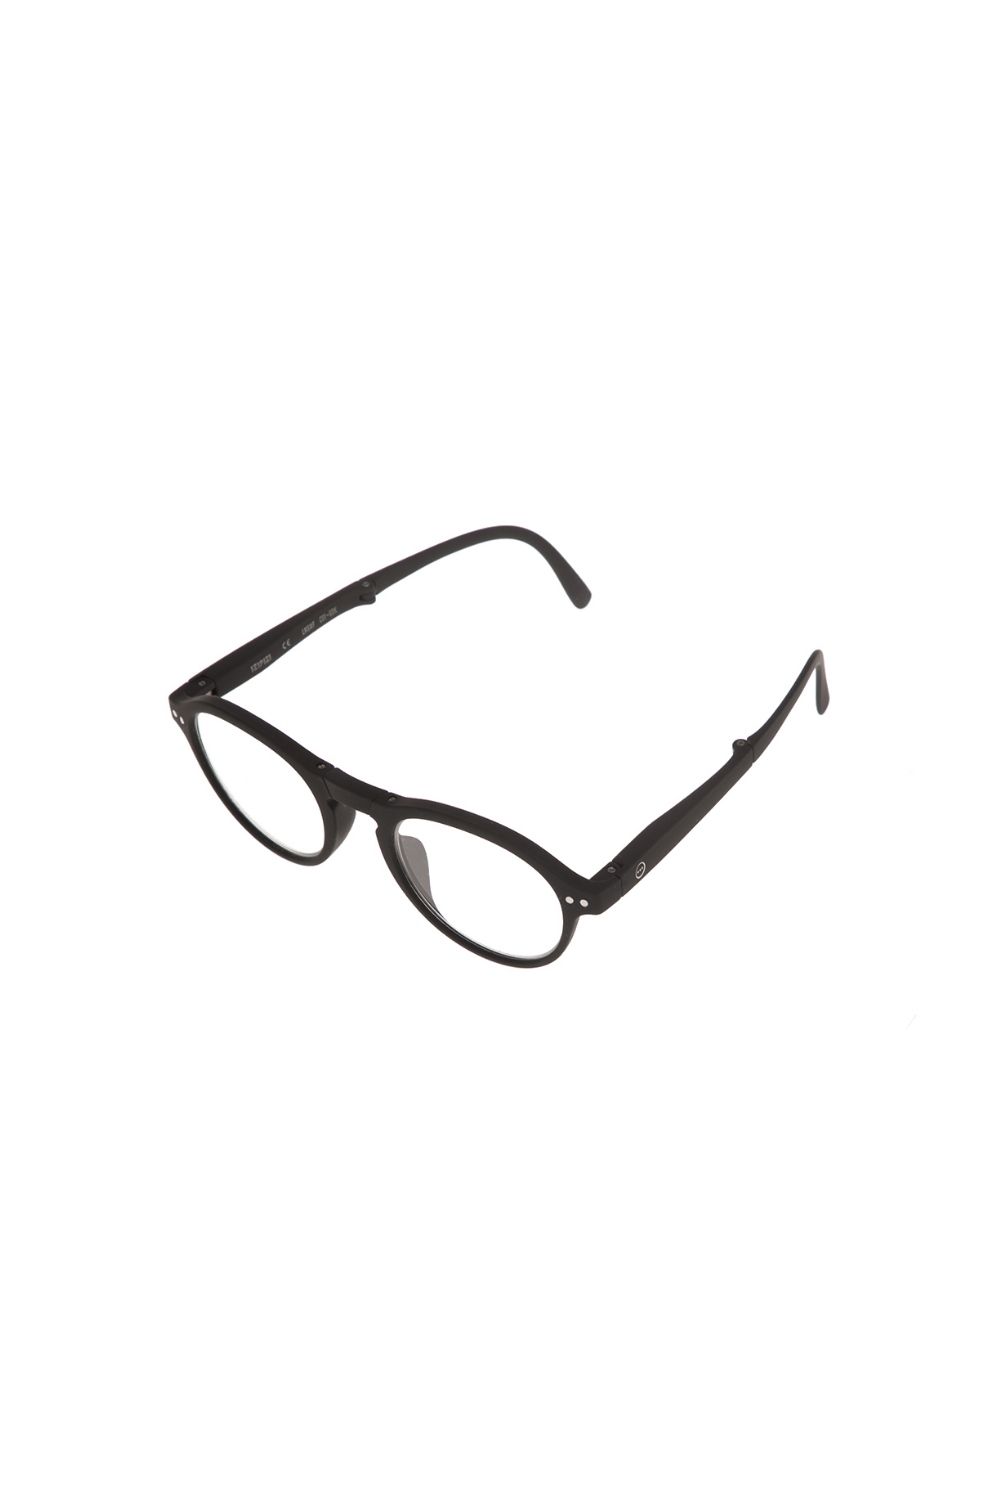 Γυναικεία/Αξεσουάρ/Γυαλιά/Οράσεως IZIPIZI - Unisex γυαλιά οράσεως IZIPIZI READING F μαύρα